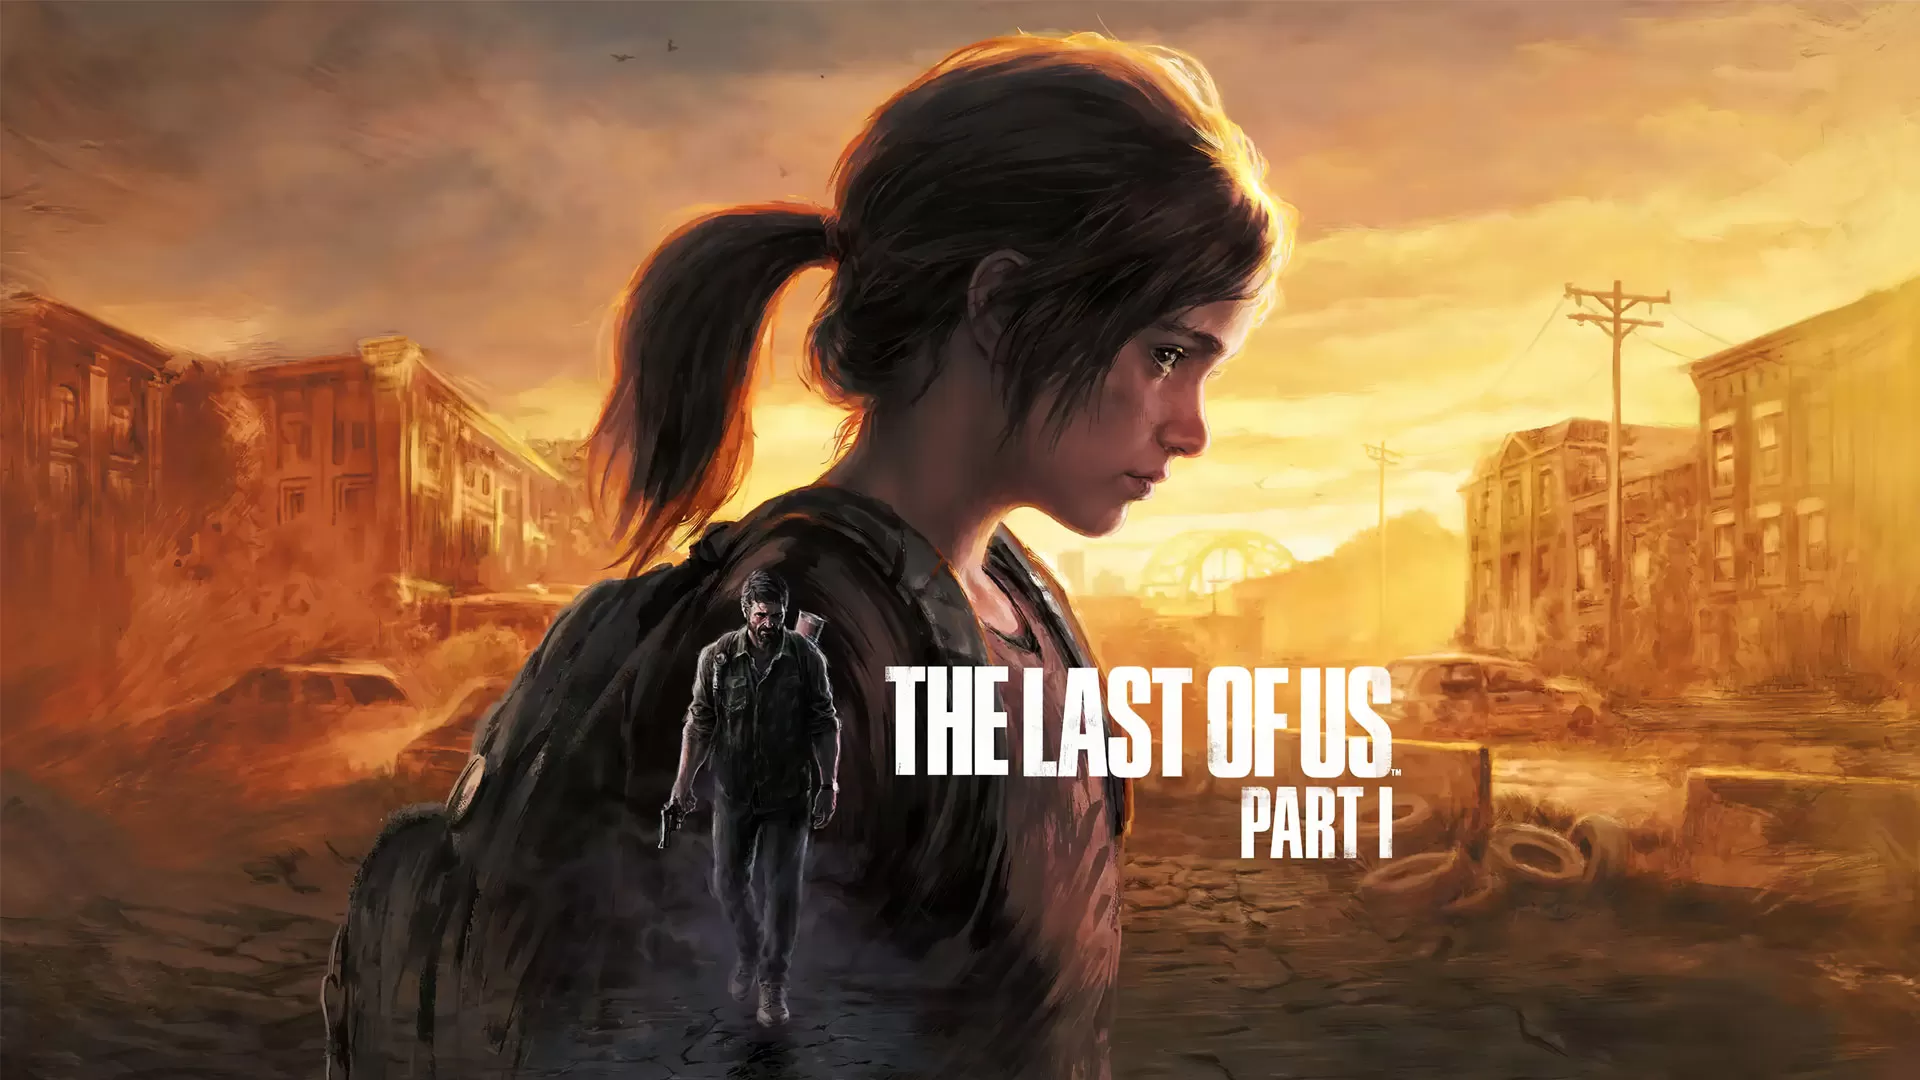 بررسی بازی The Last of Us Part 1 + نقاط مثبت و منفی 